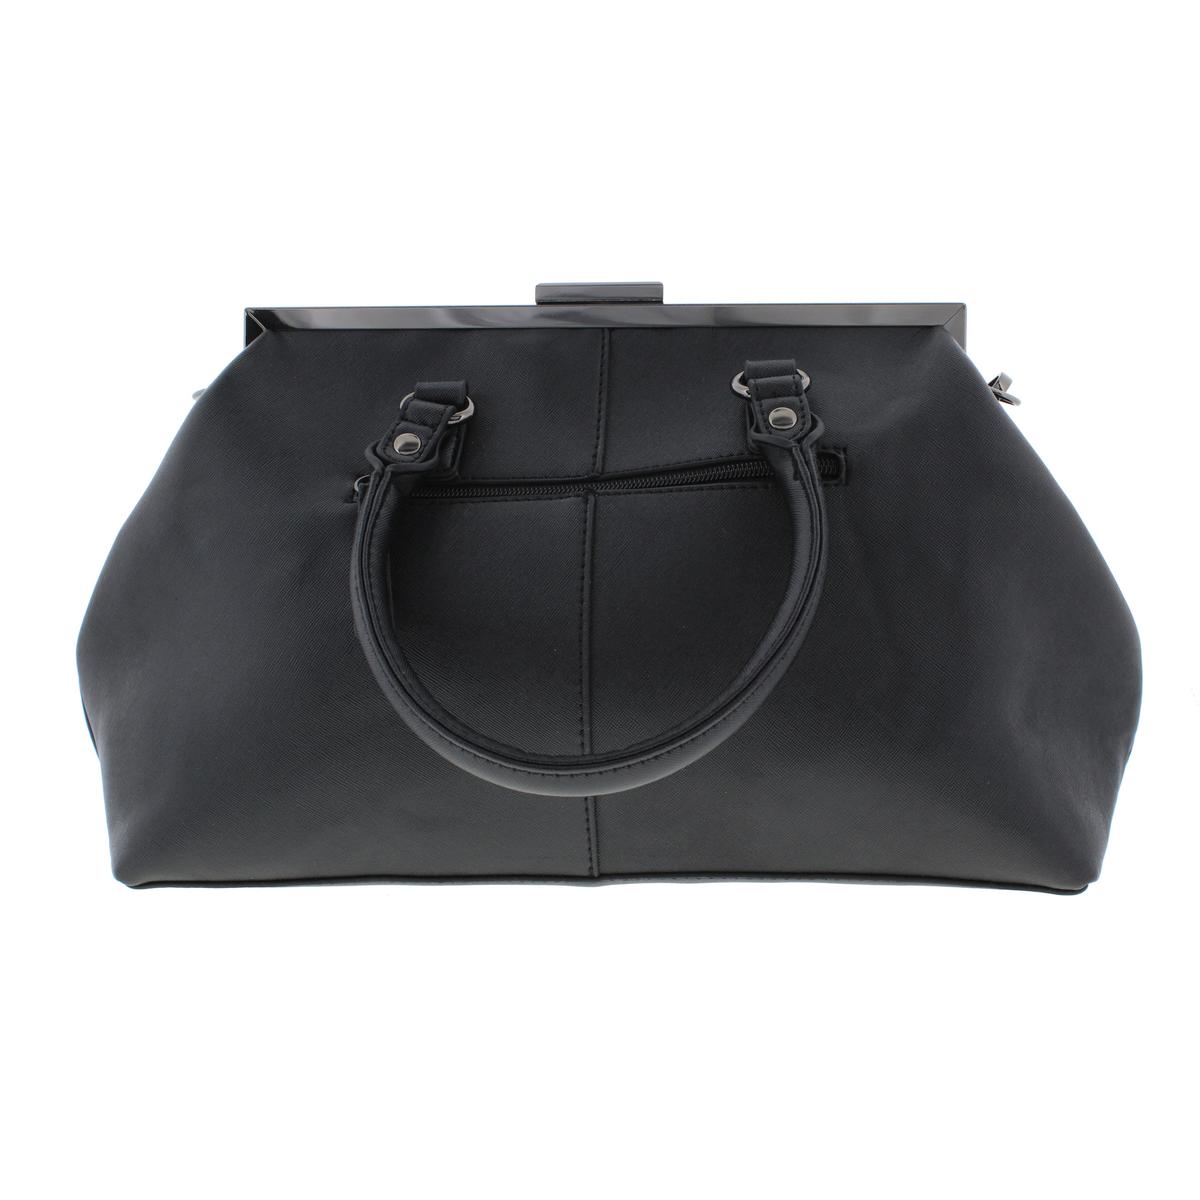 Versace 1969 0853 Womens Savannah Black Frame Satchel Handbag Purse ...